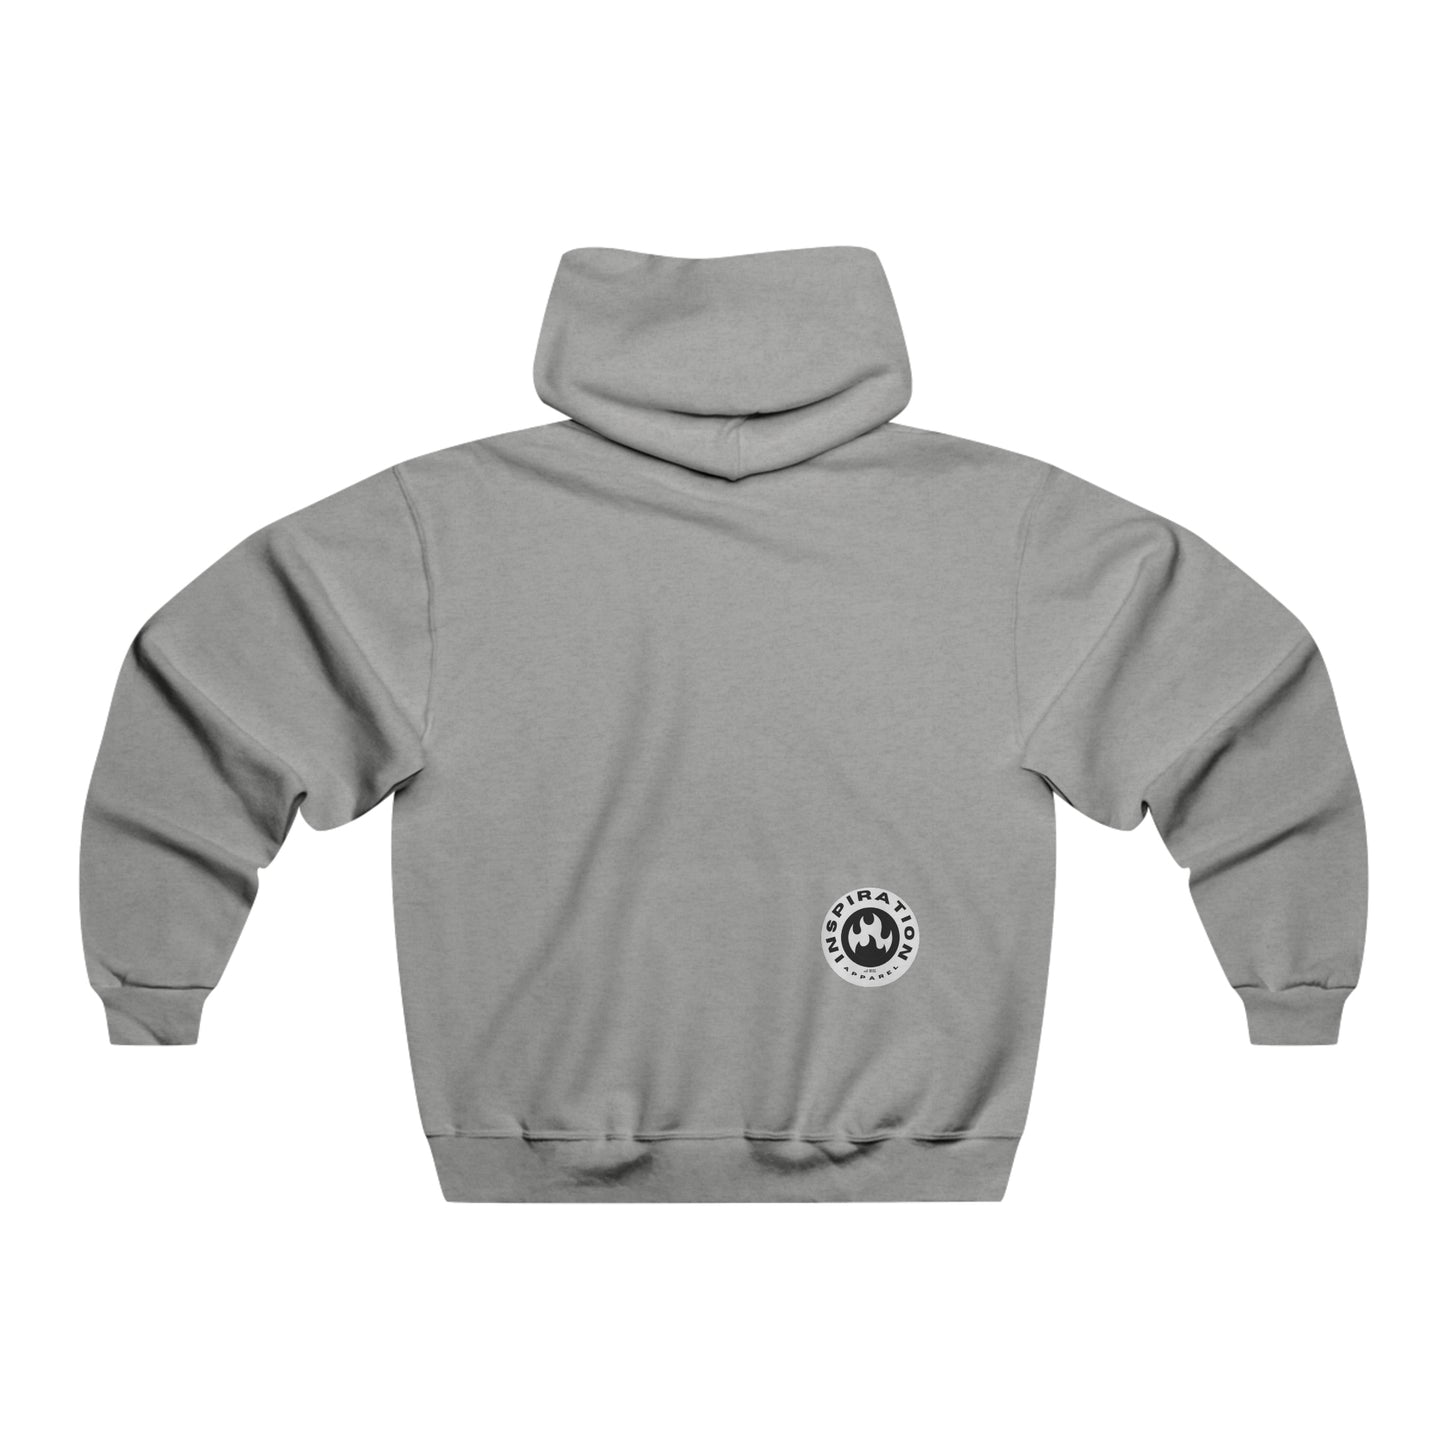 Luke1248 Men's NUBLEND® Hooded Sweatshirt